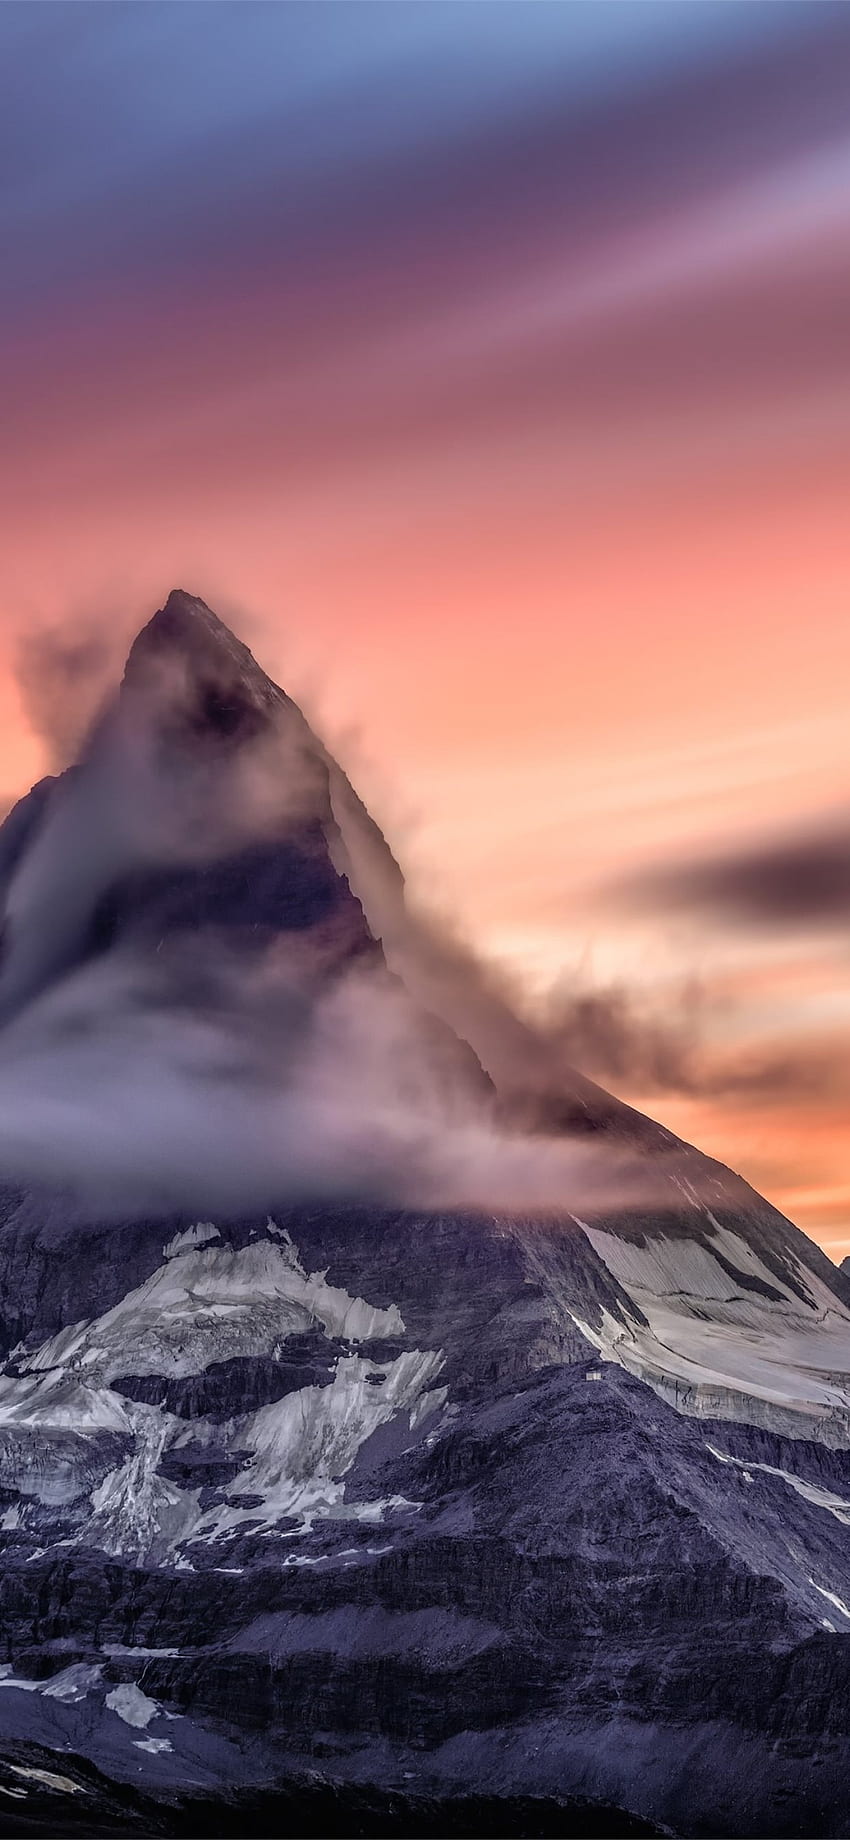 Switzerland Matterhorn Mountain Clouds iPhone X , Gold Mountain HD phone wallpaper